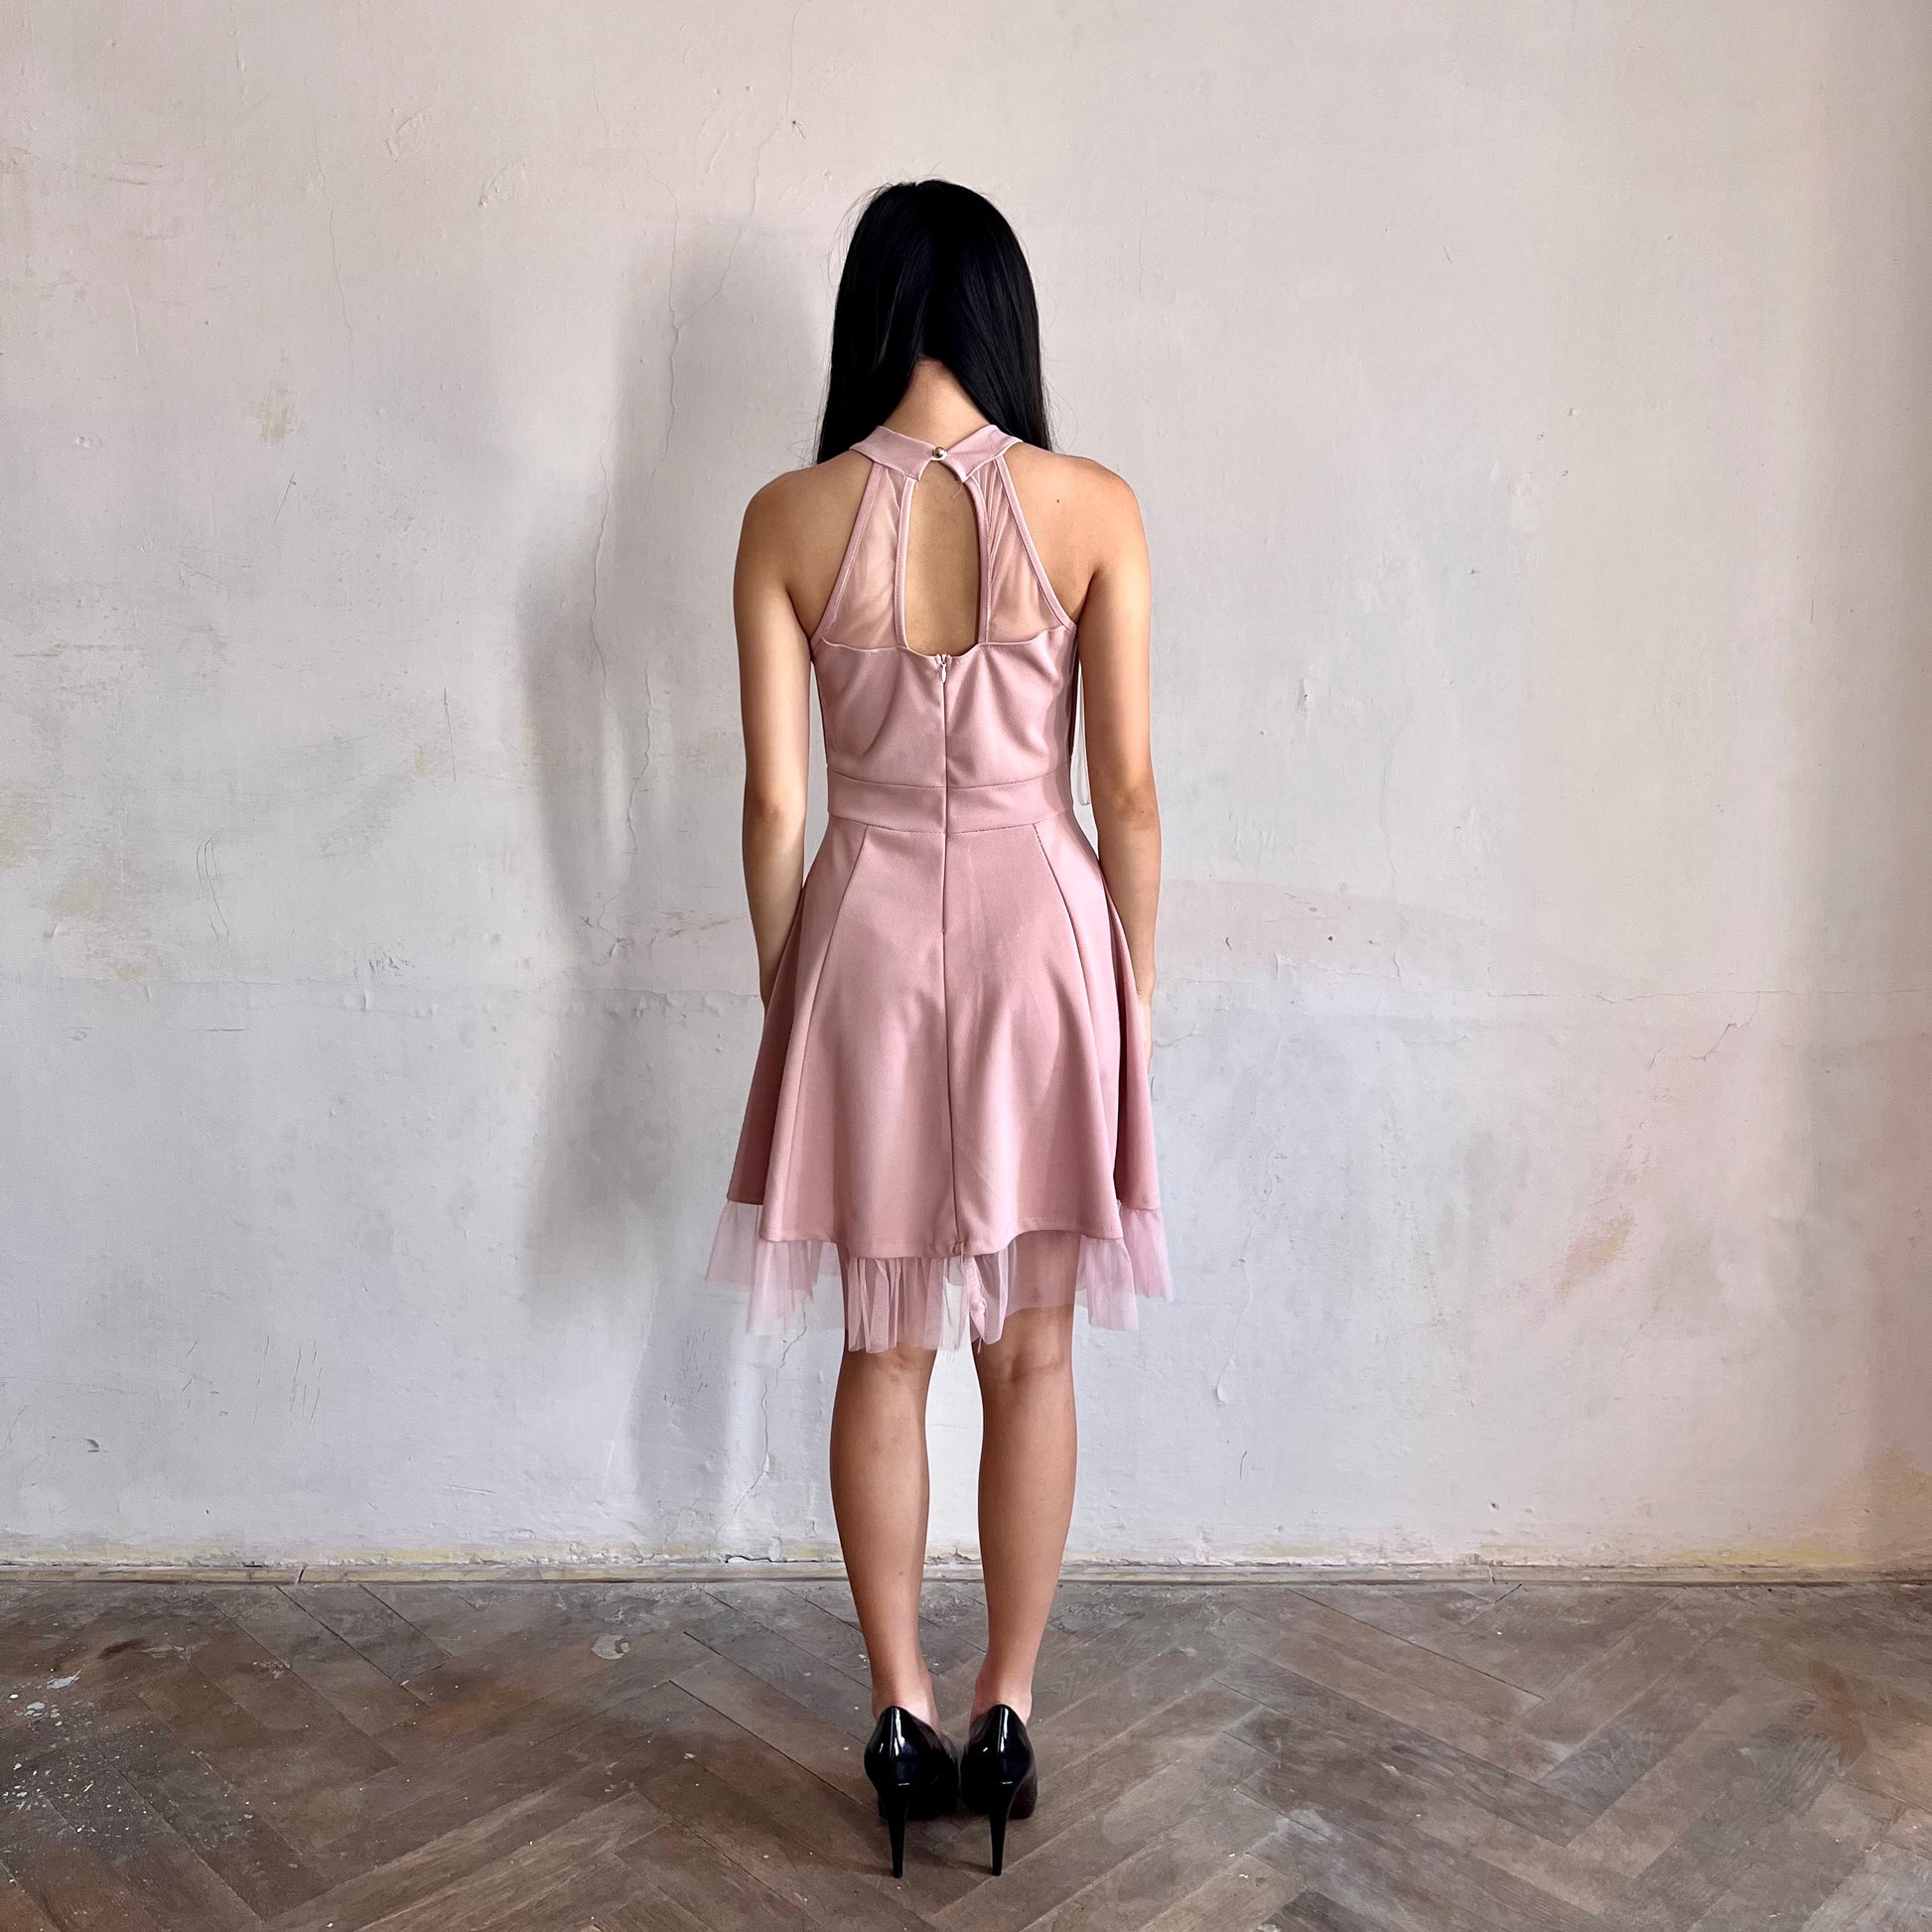 Modelka asijského původu pózující zezadu oblečená v růžových krátkých společenských šatech